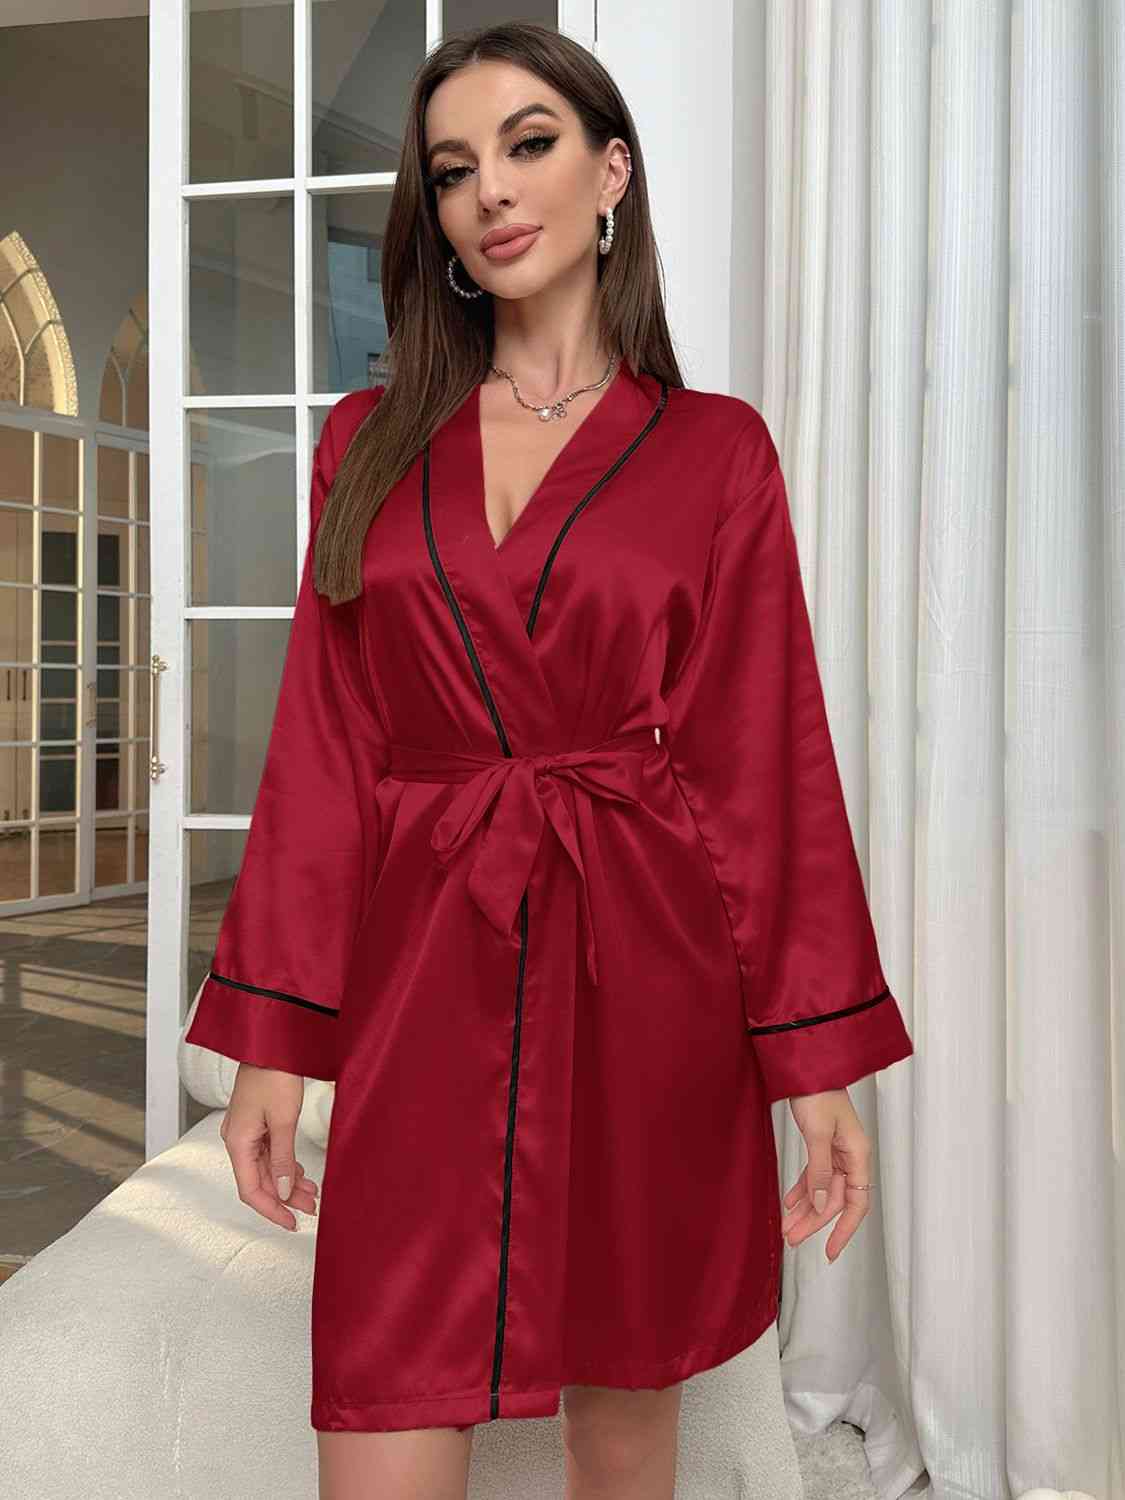 TEEK - Tie Waist Womens Robe ROBE TEEK Trend Deep Red S 